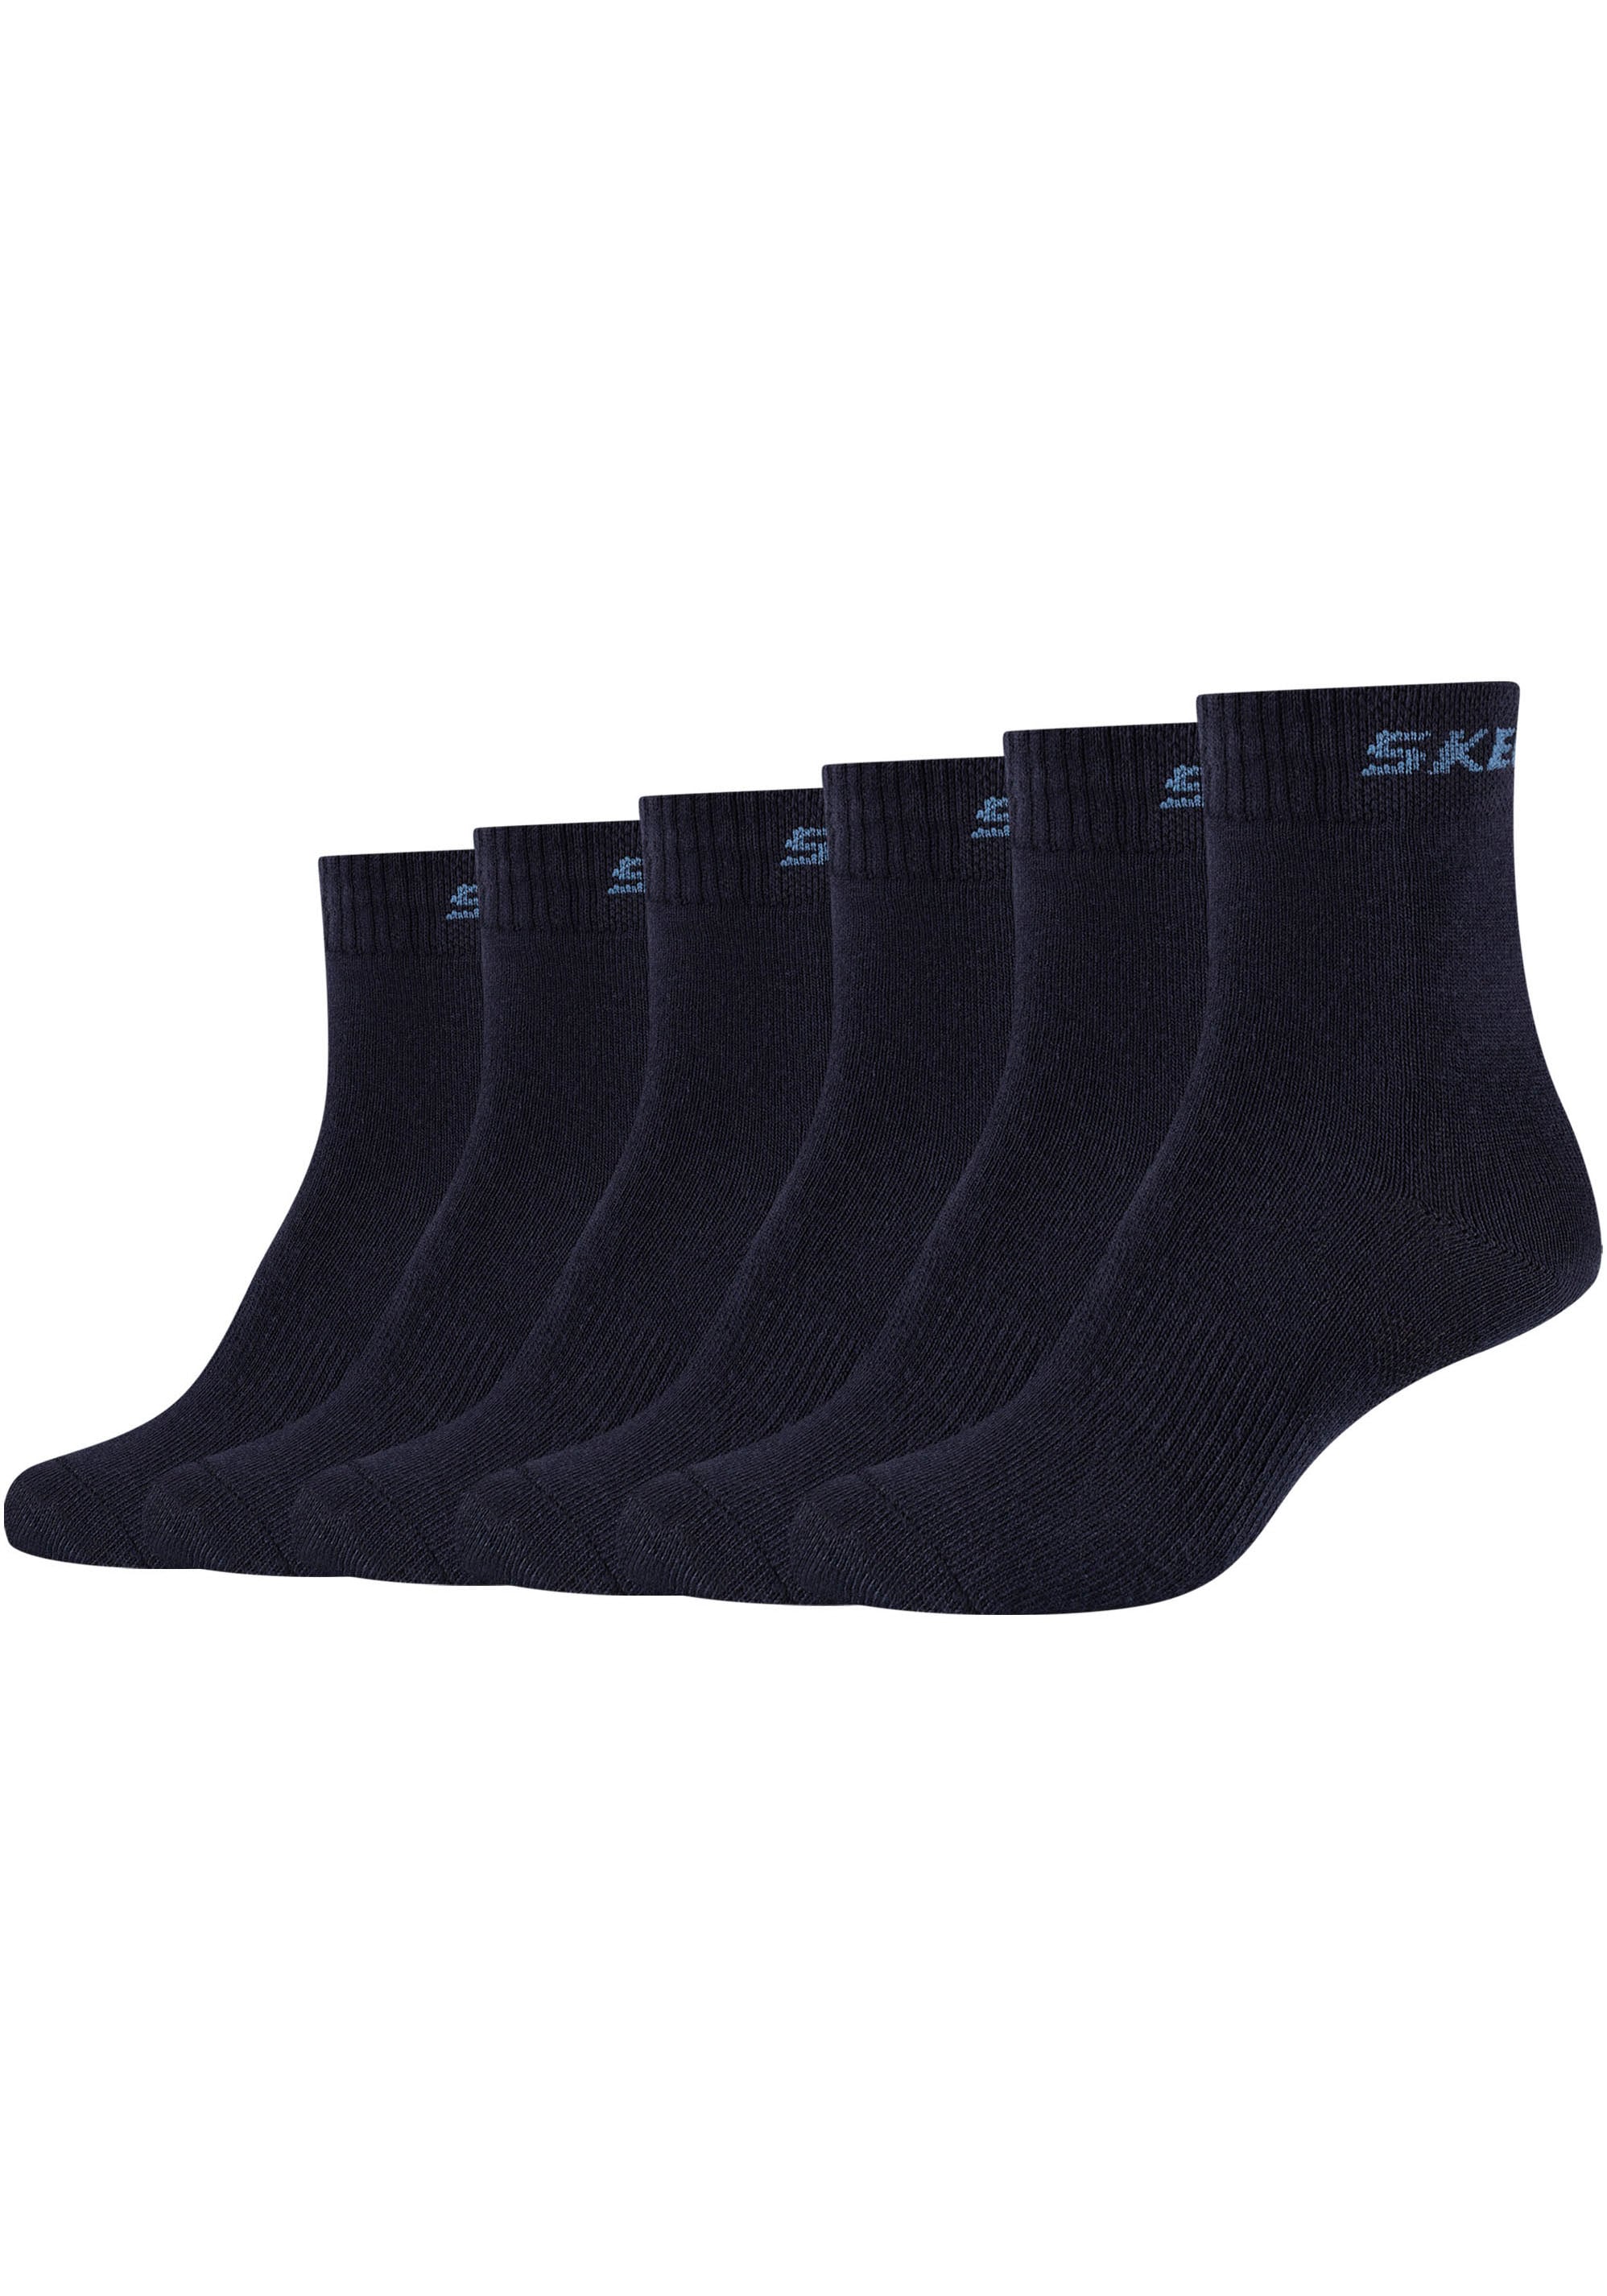 Socken, (Packung, 6 Paar), Mittelfußunterstützung gibt Stabilität